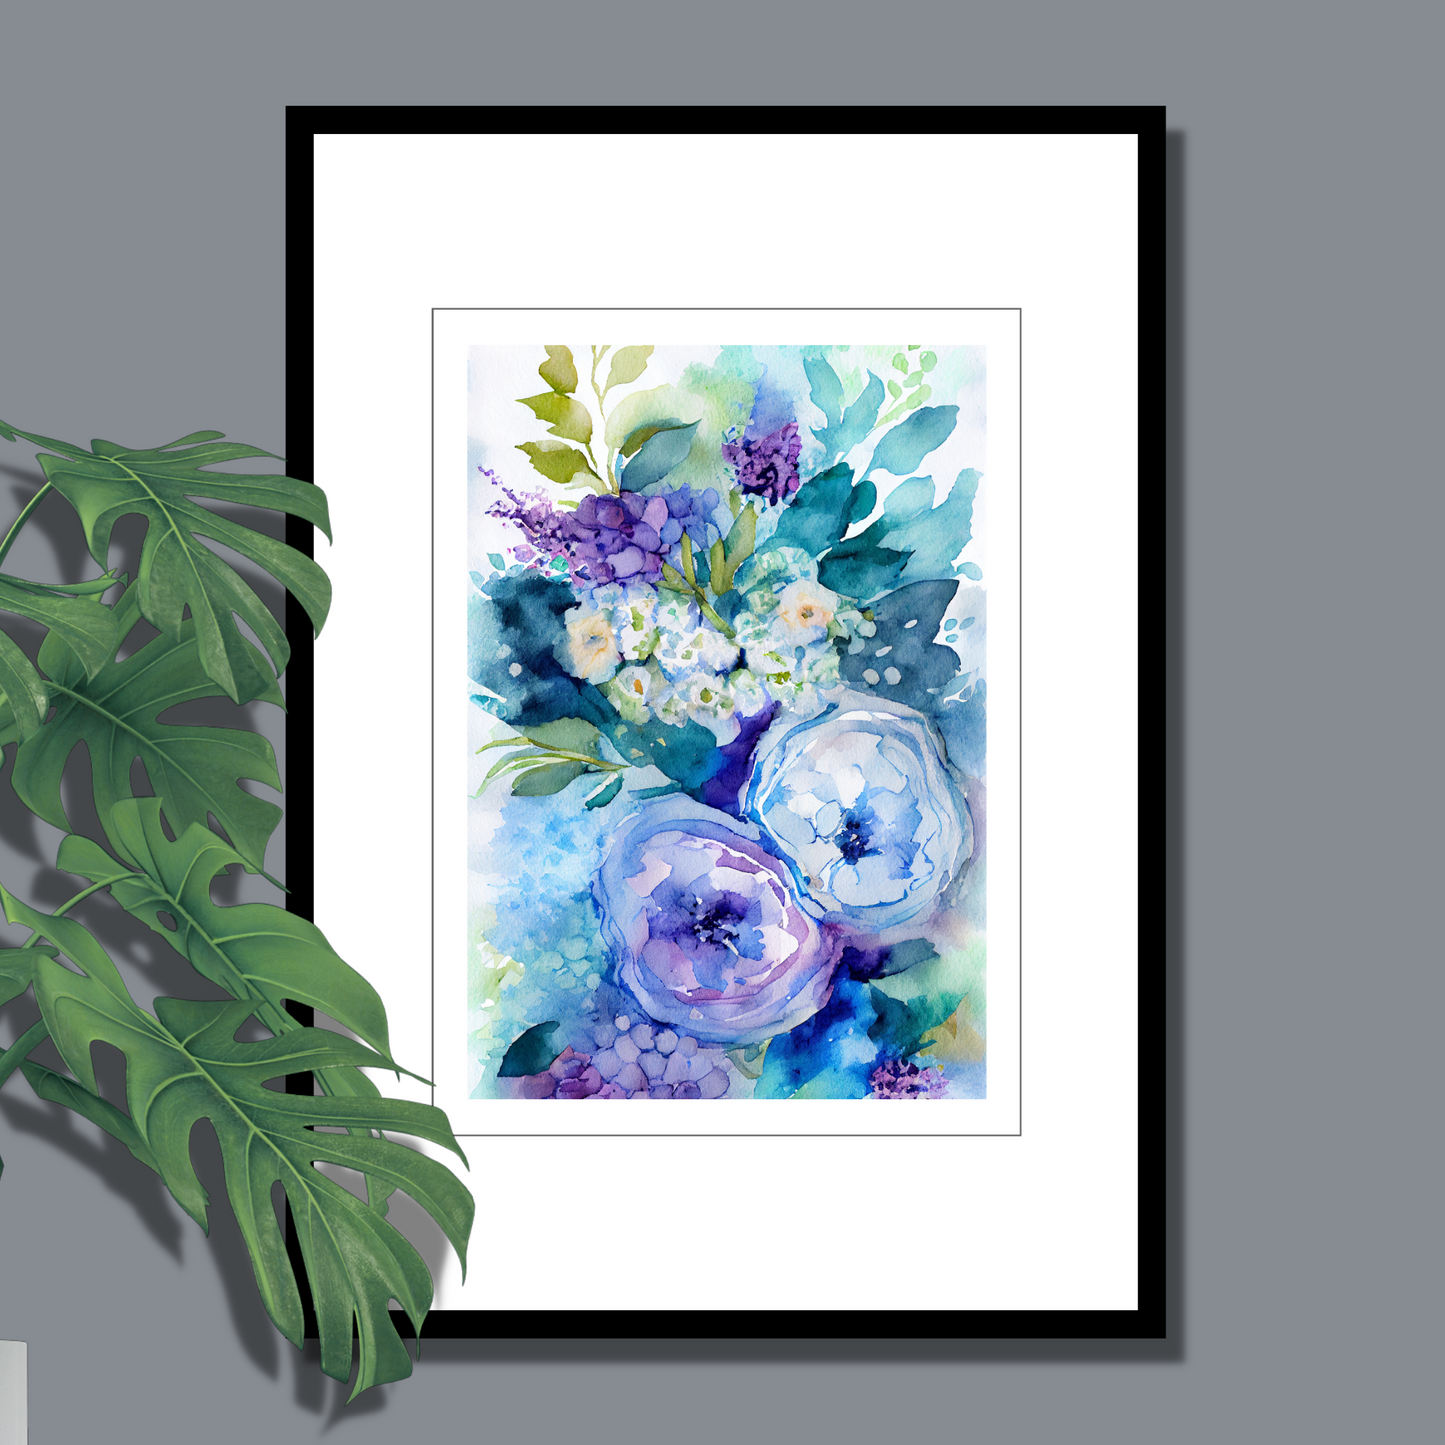 Blomstermotiv i vannfarger i nyanser grønn, beige, blå og lilla. Plakaten med ramme har en hvit dekorativ kant rundt. 